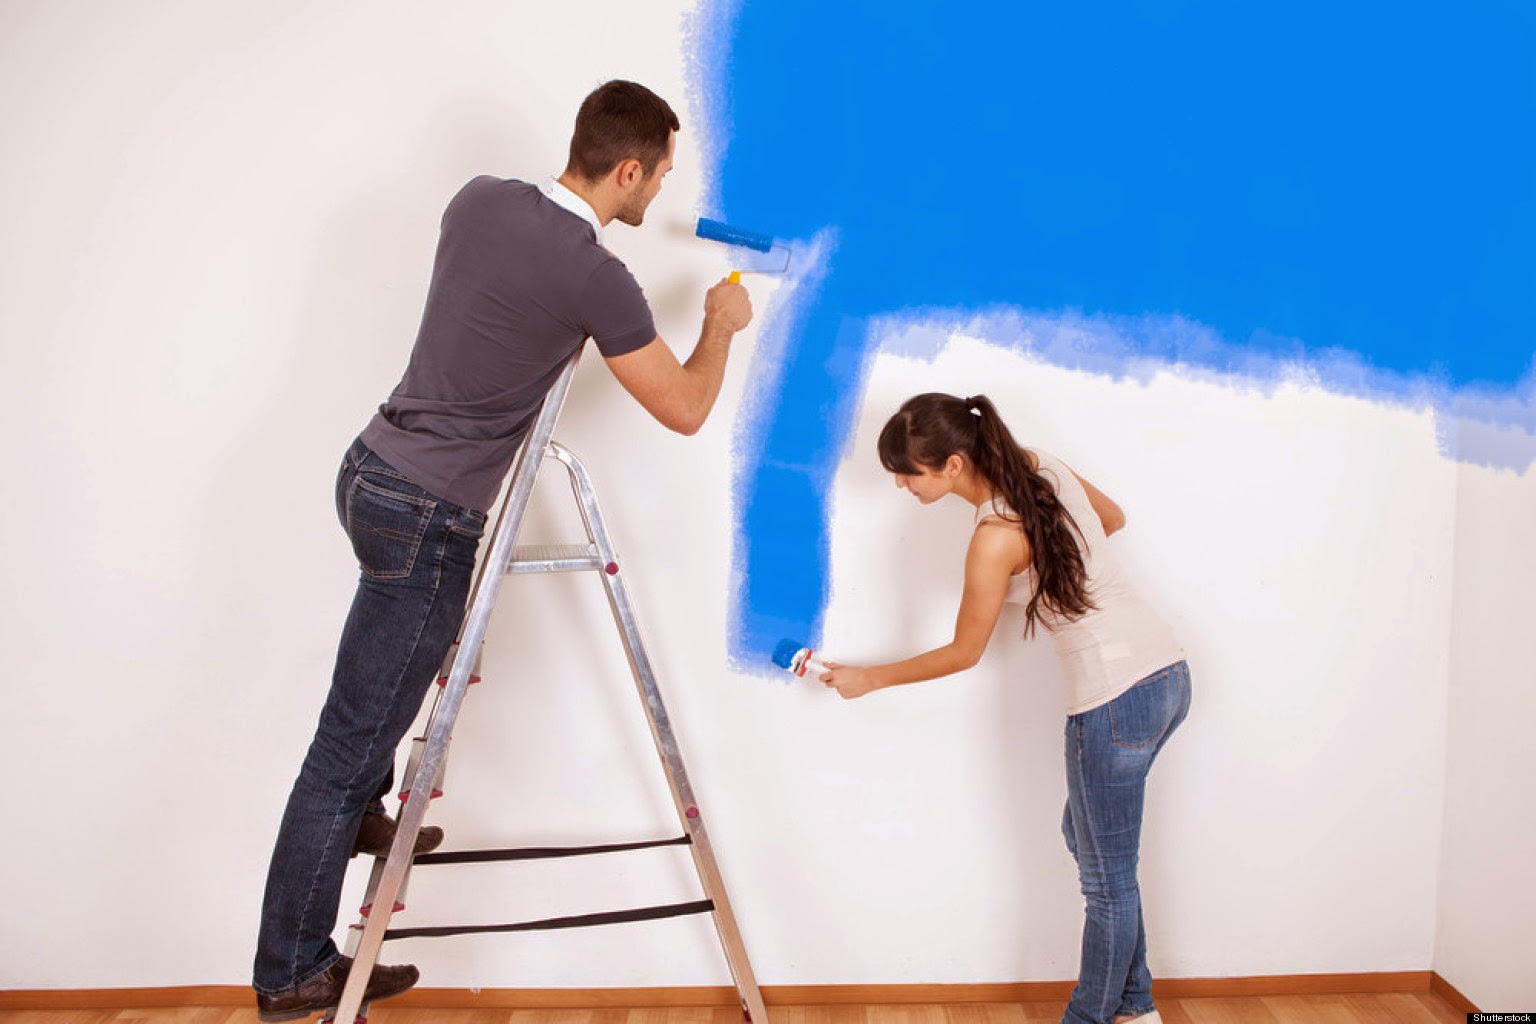 Quy trình cung cấp dịch vụ sơn nhà giá rẻ của Đức Phúc